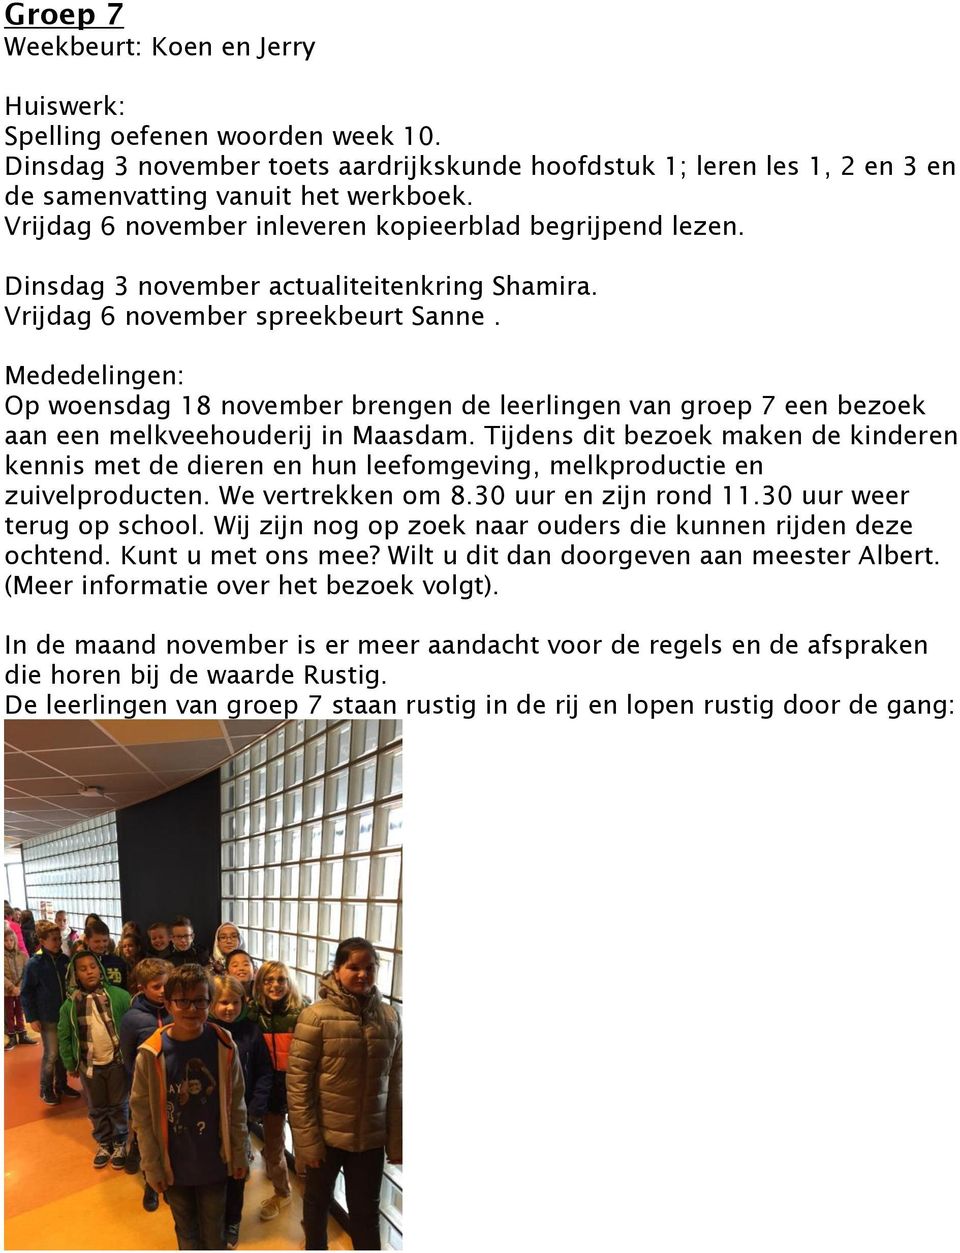 Op woensdag 18 november brengen de leerlingen van groep 7 een bezoek aan een melkveehouderij in Maasdam.